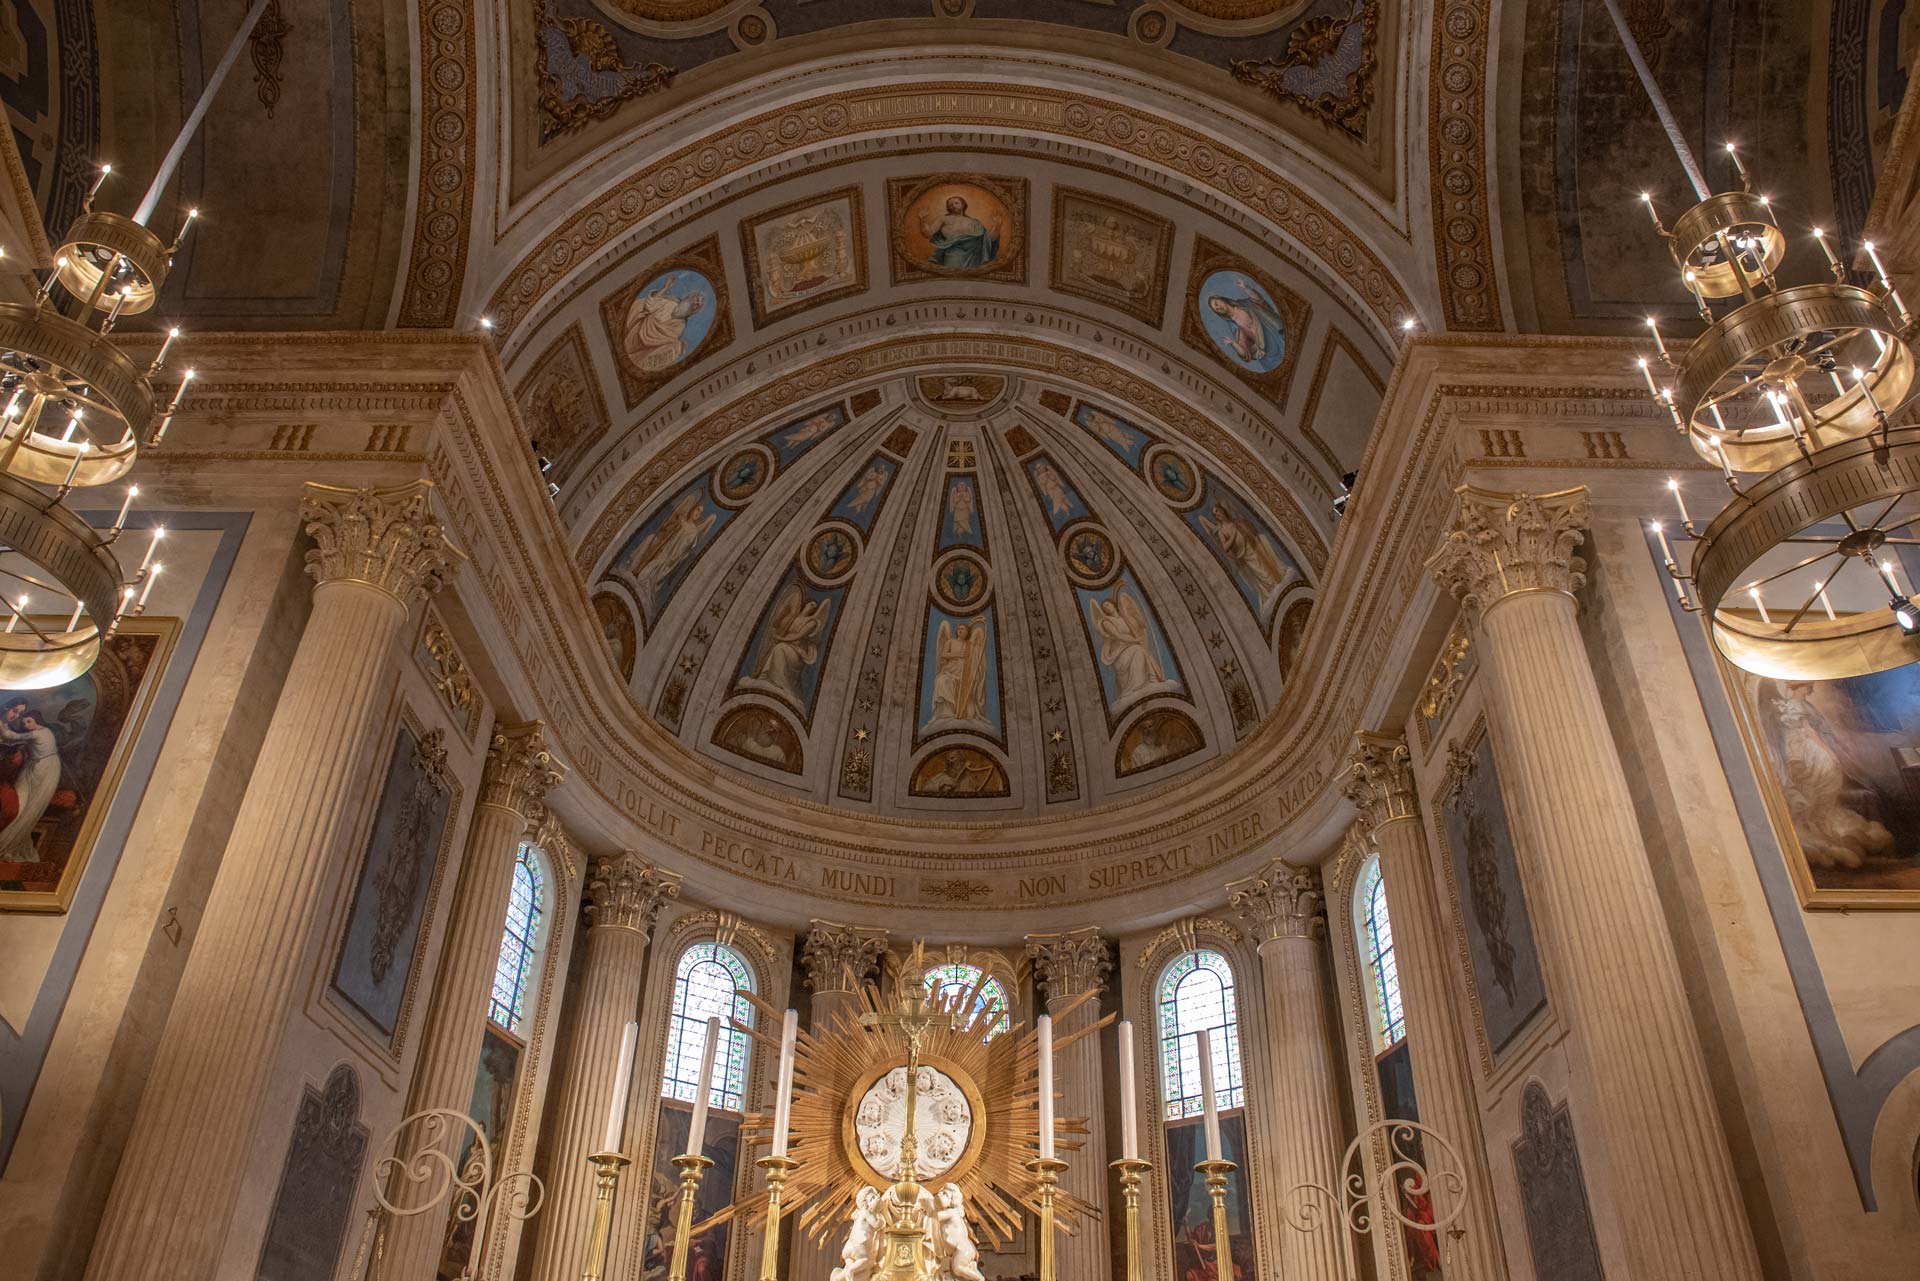 Séraphins, toiles marouflées et dorures se côtoient à nouveau sur les plafonds et les murs du chœur de la cathédrale.